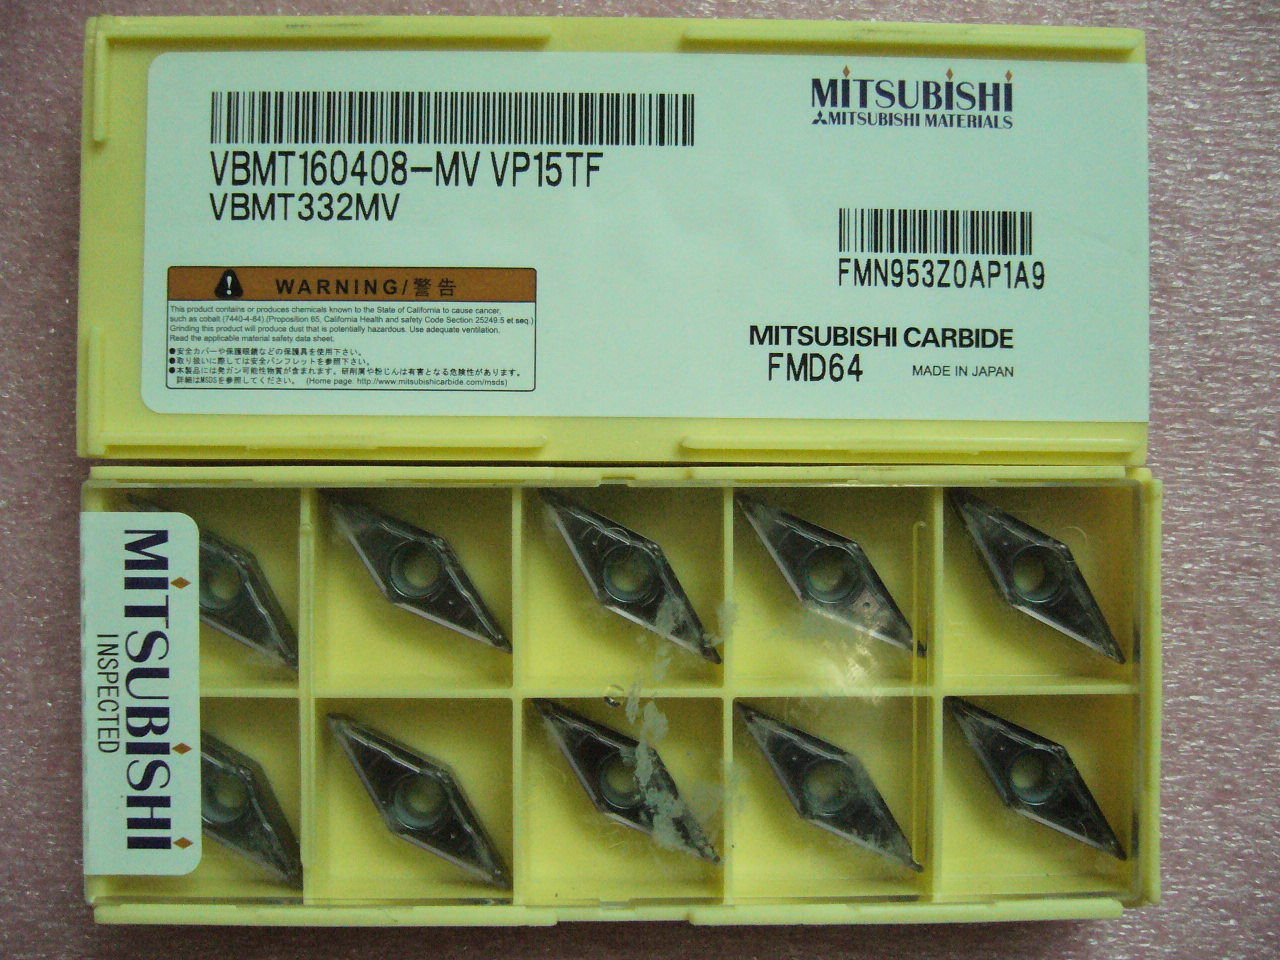 QTY 10x Mitsubishi VBMT332MV VBMT160408-MV VP15TF NEW